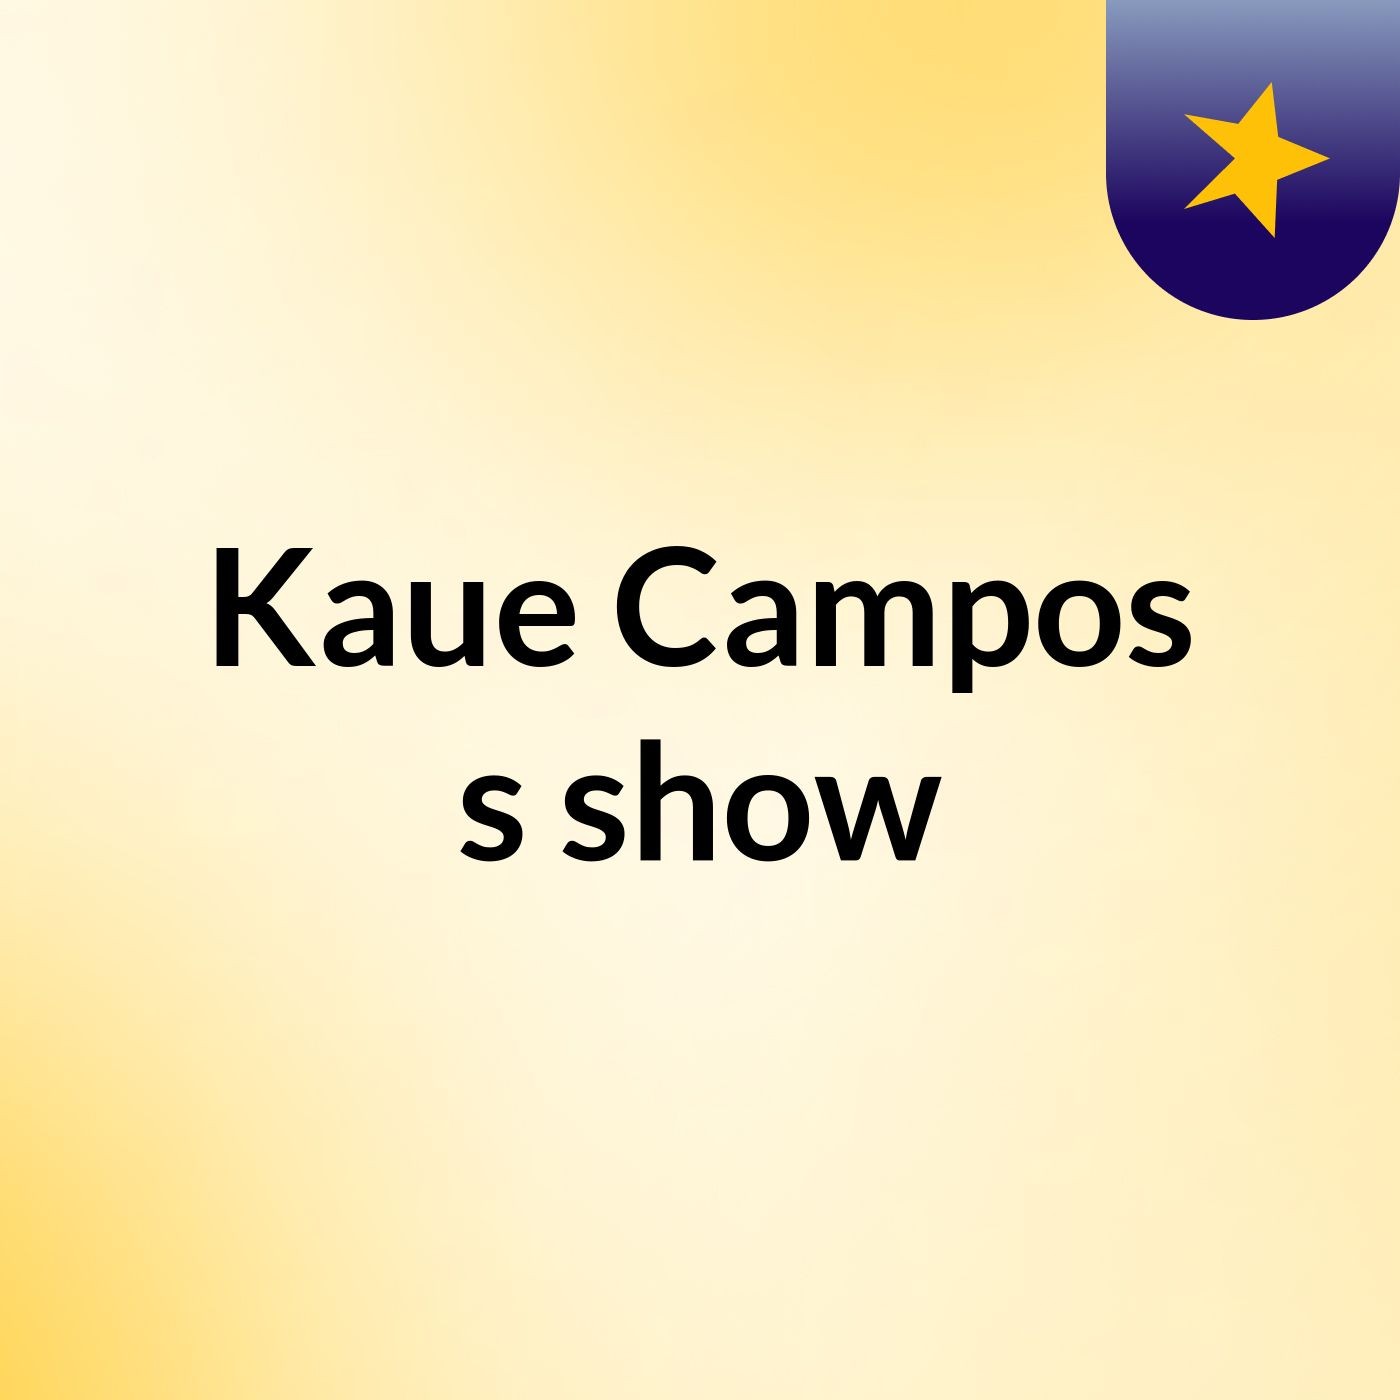 Kaue Campos's show